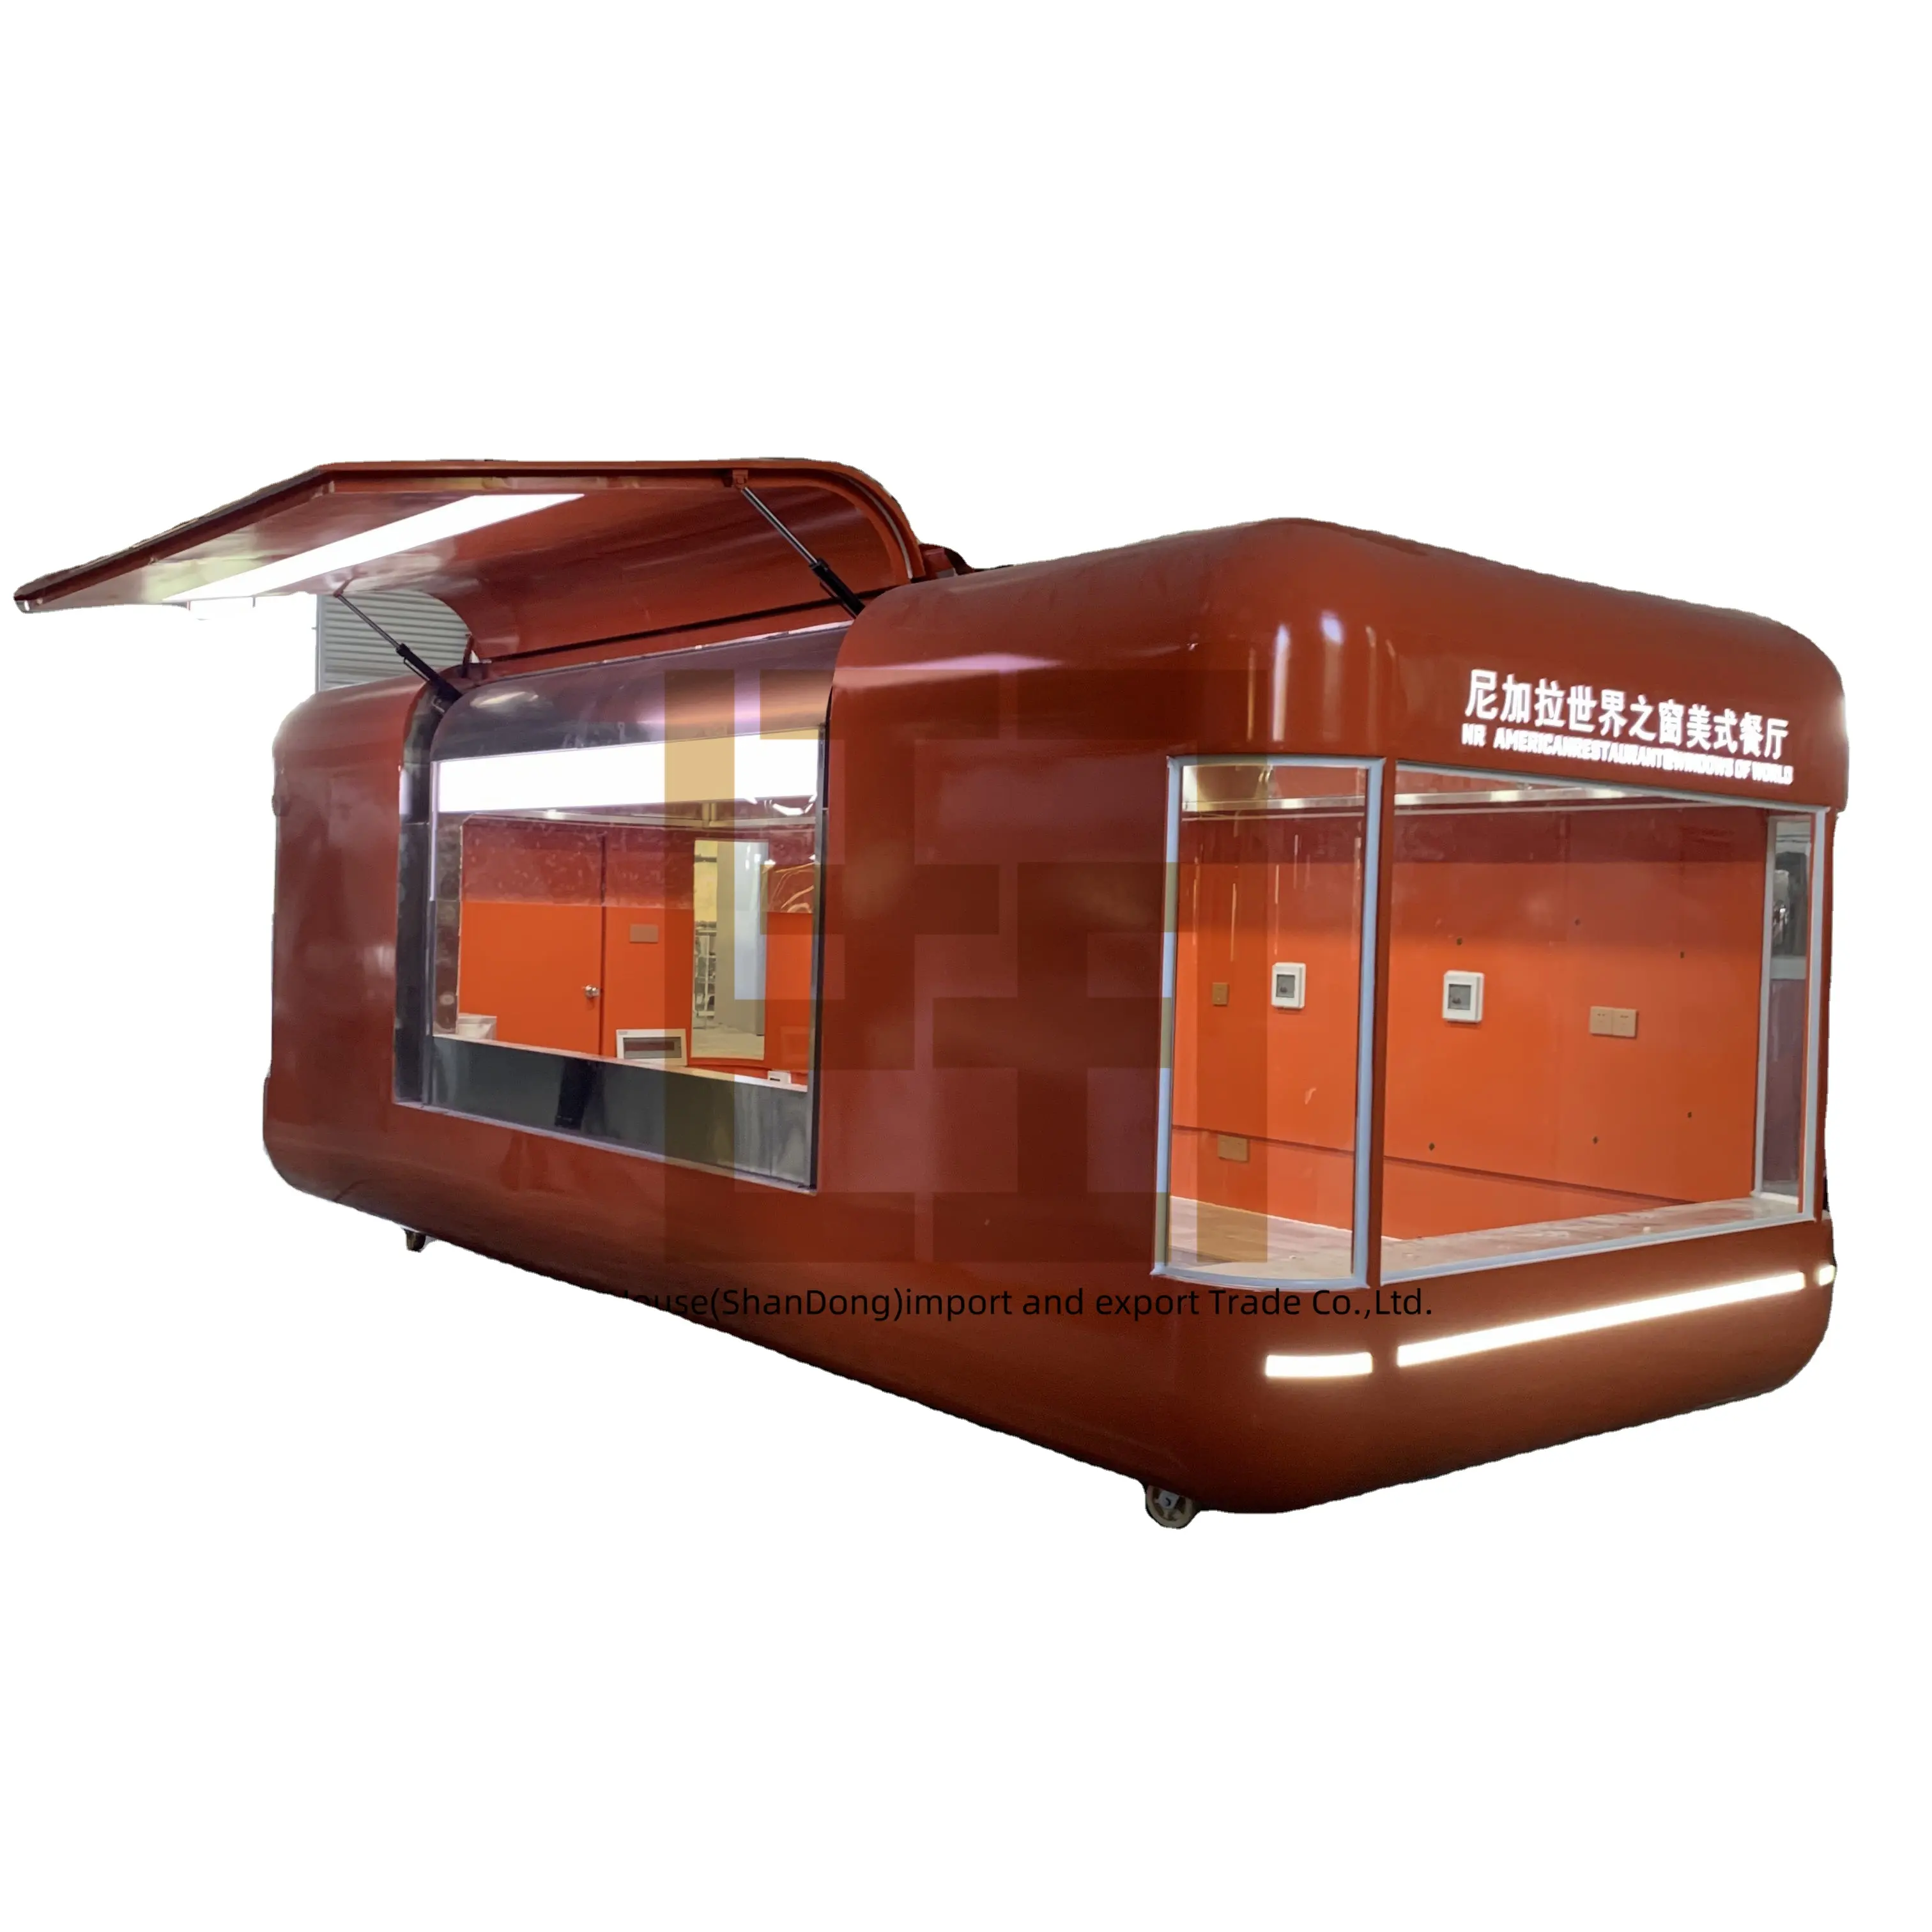 Nuevo camión de comida de flujo de aire rápido móvil para café Pizza Hot Dog Ice Cream-Acero inoxidable para ventas de panadería